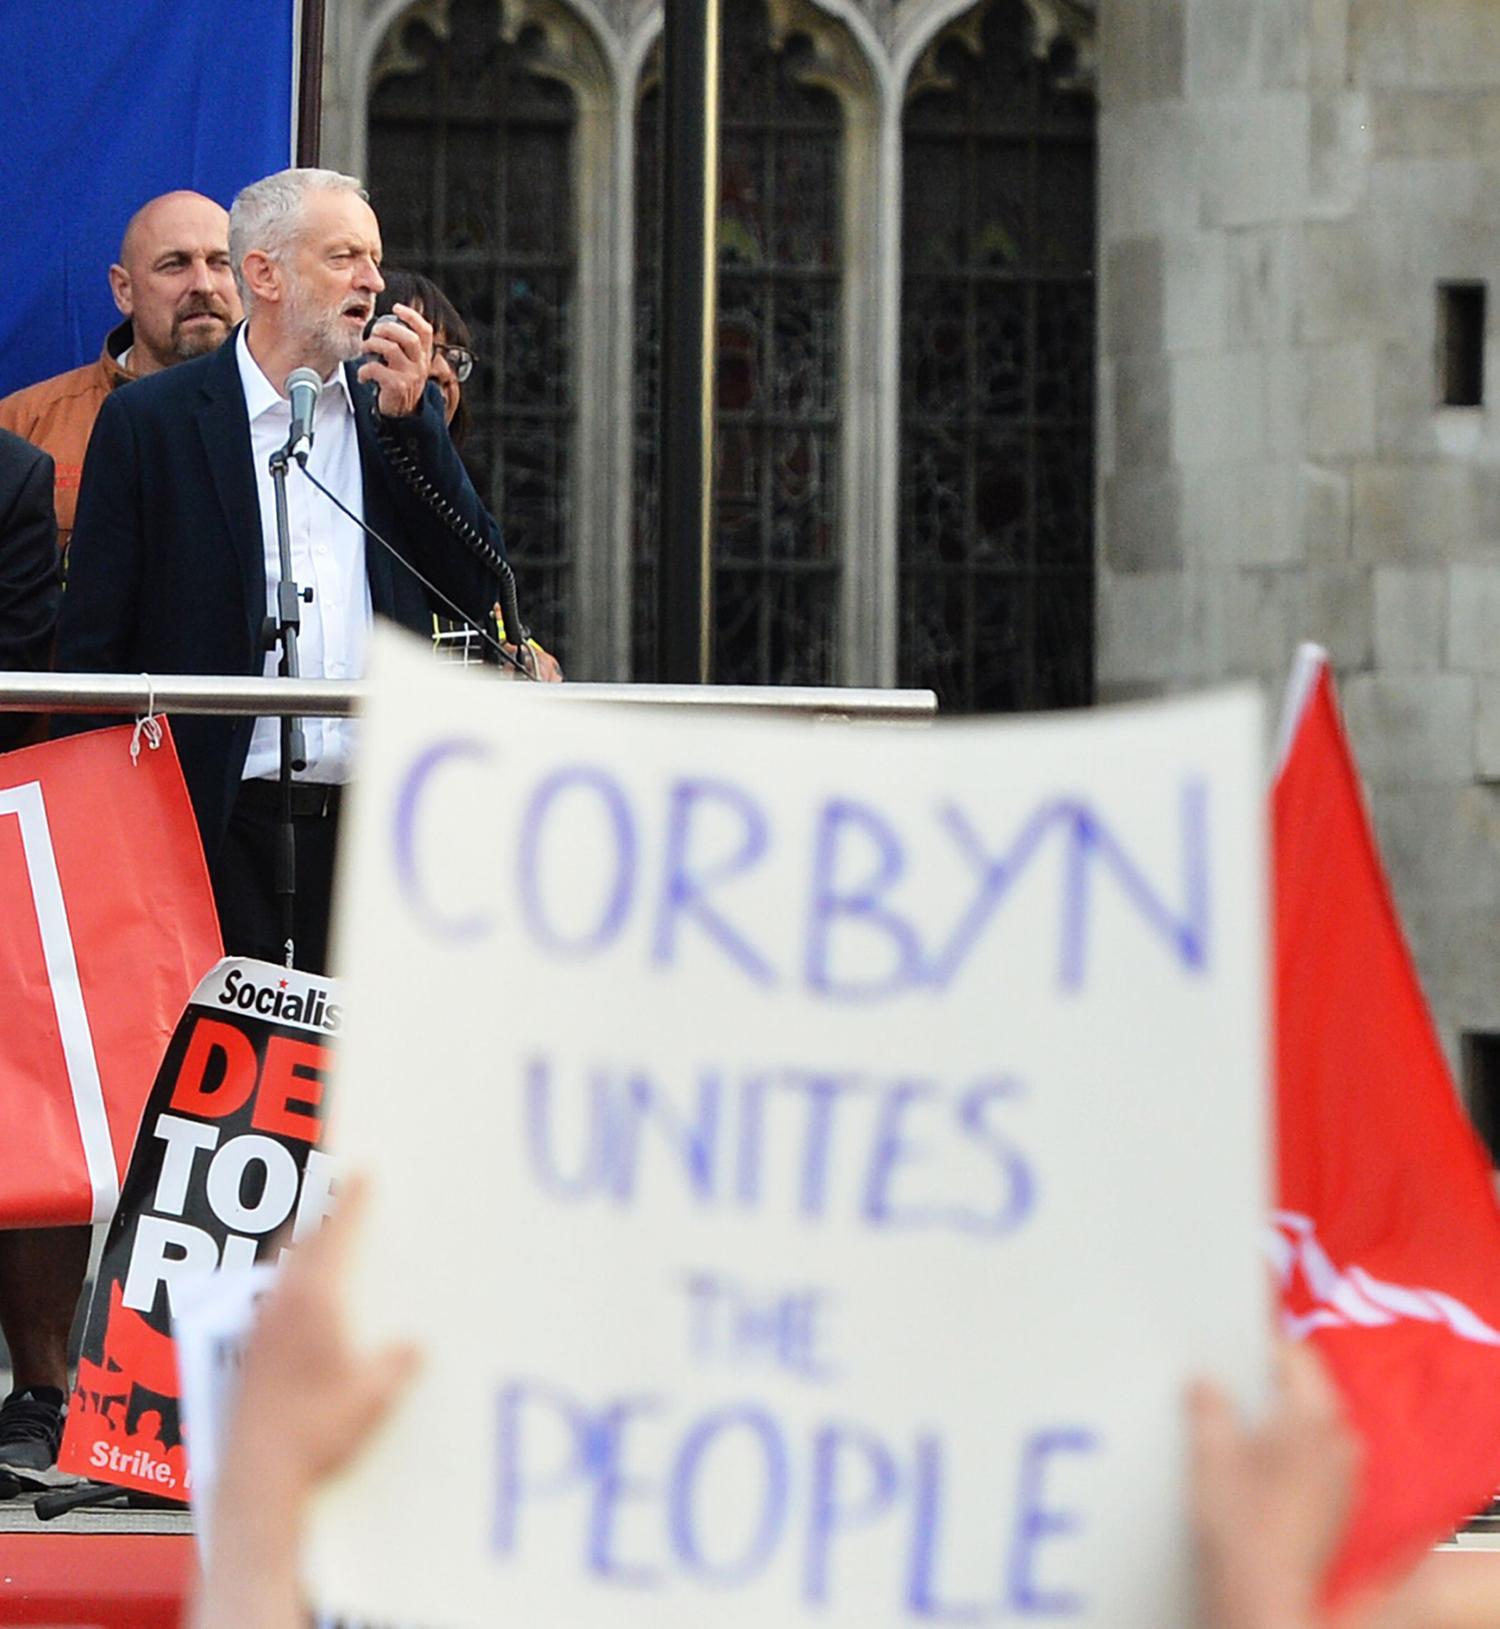 En handskriven skylt med texten "Corbyn förenar folket" hölls högt när Corbyn talade den 27 juni. Foto: AP